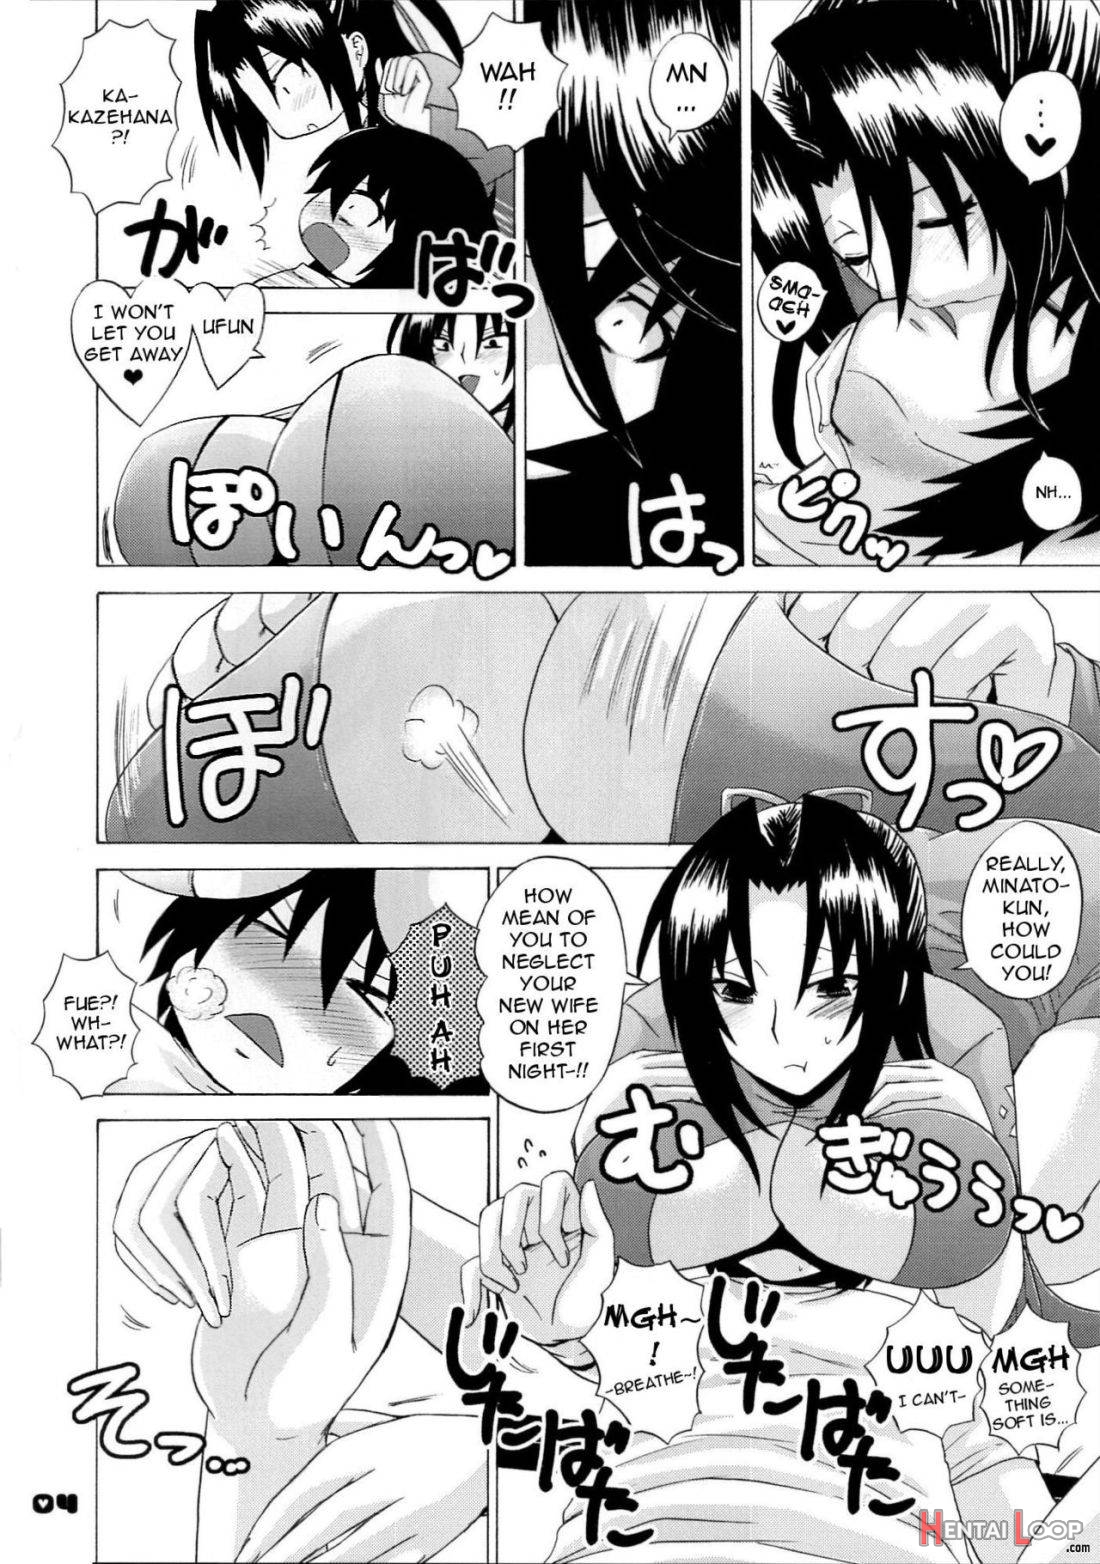 Kazehana-san is My Sekirei page 3